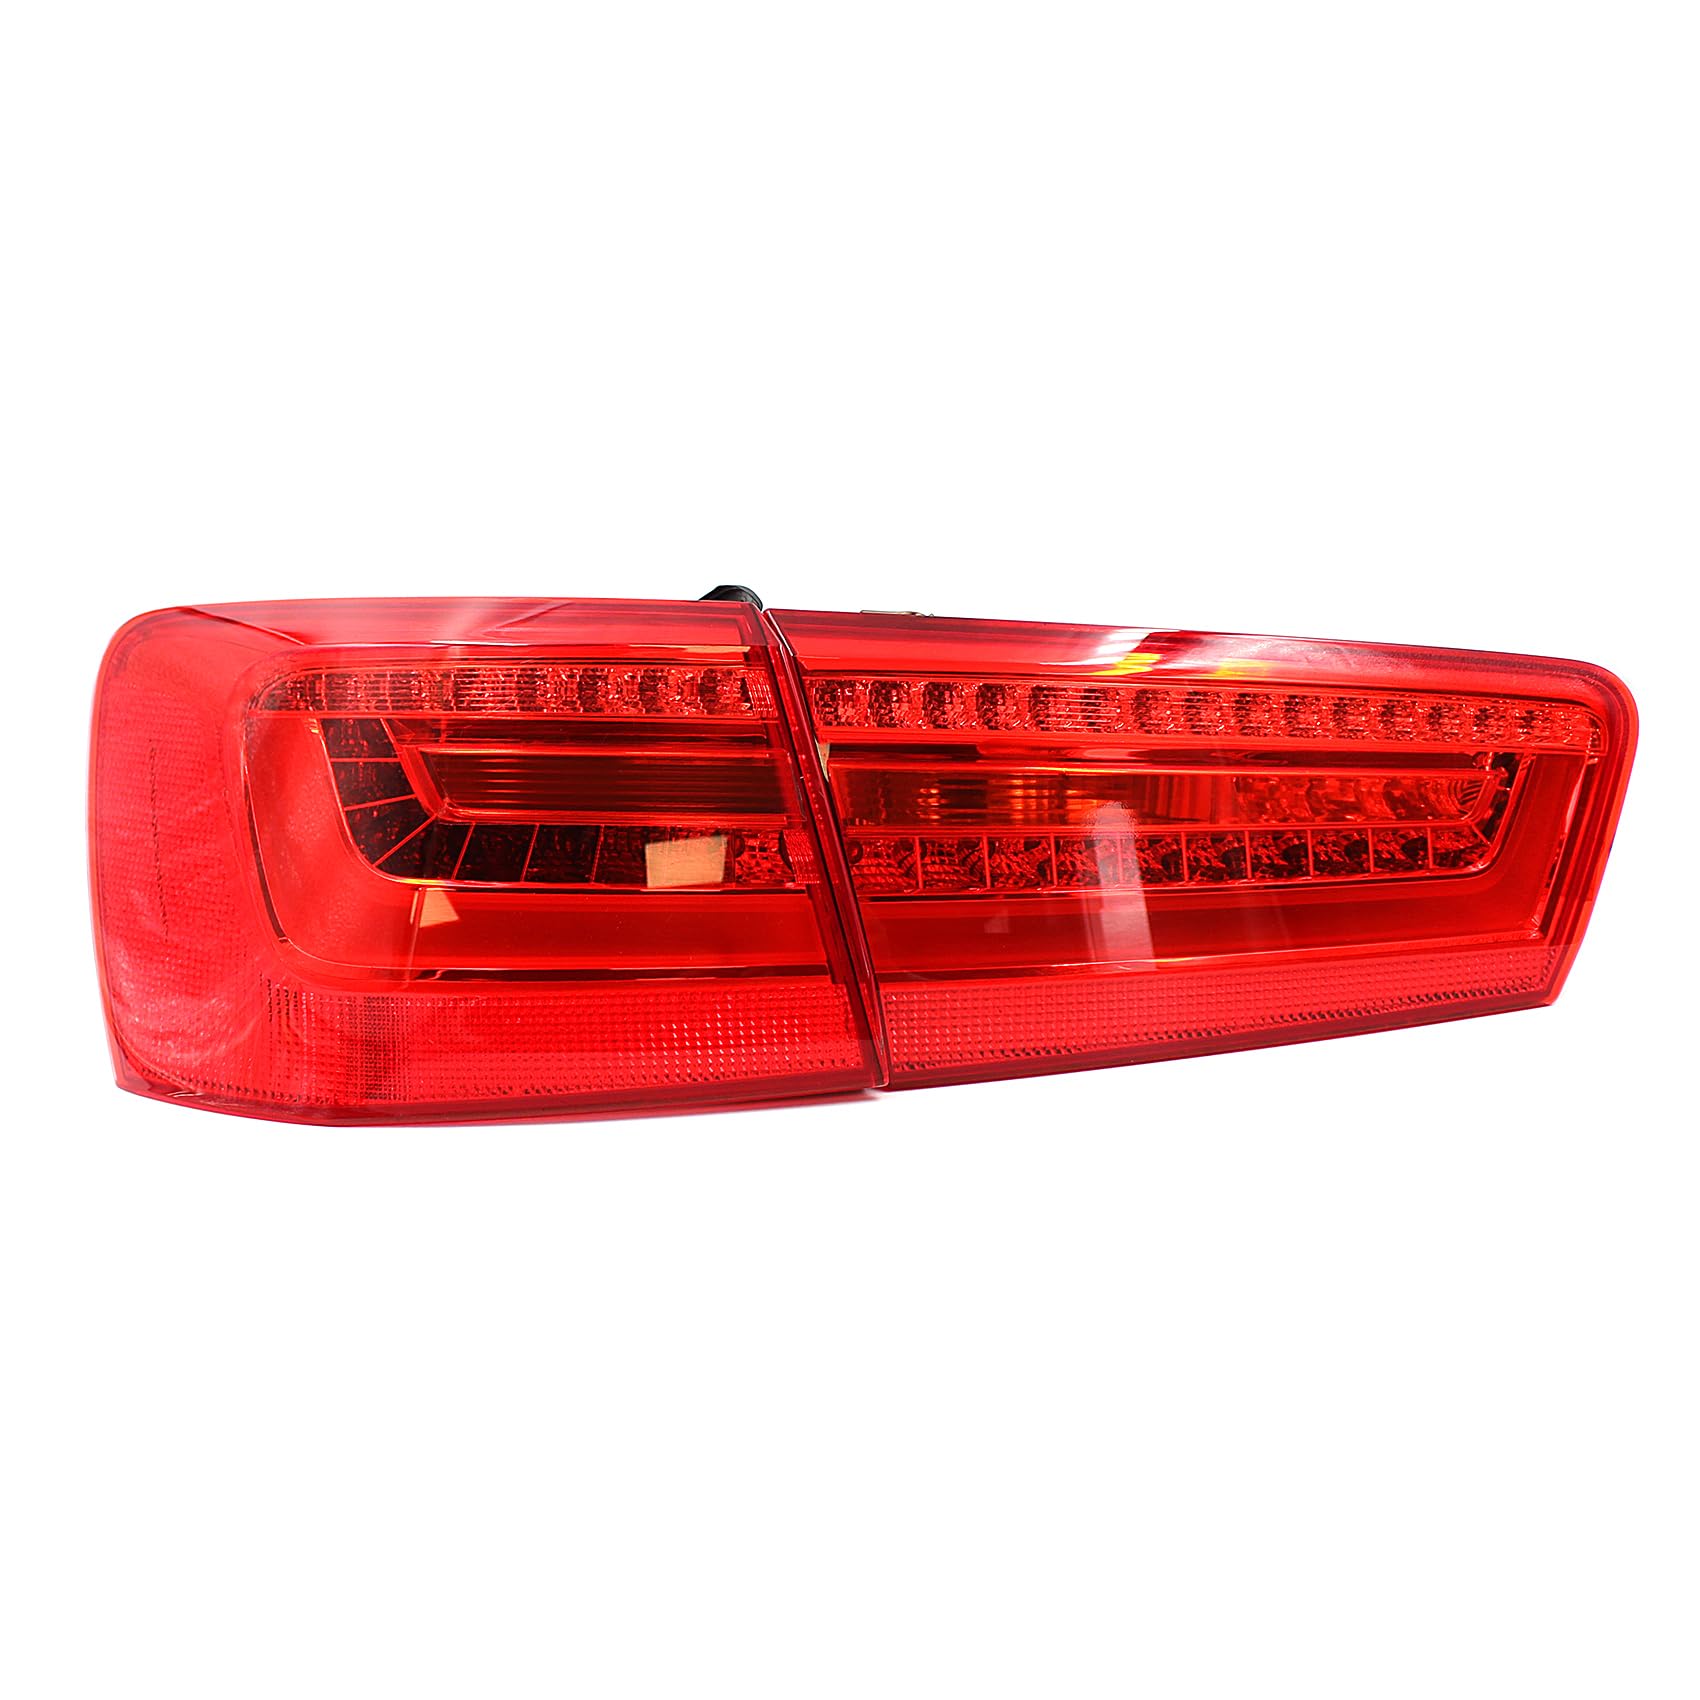 Rückleuchten Folie Set Aufkleber Tönungsfolie Heckleuchten Passgenau zugeschnitten für LED Rückleuchte Selbstklebend Kfz Auto Zubehör C062 (Red) von Finest Folia